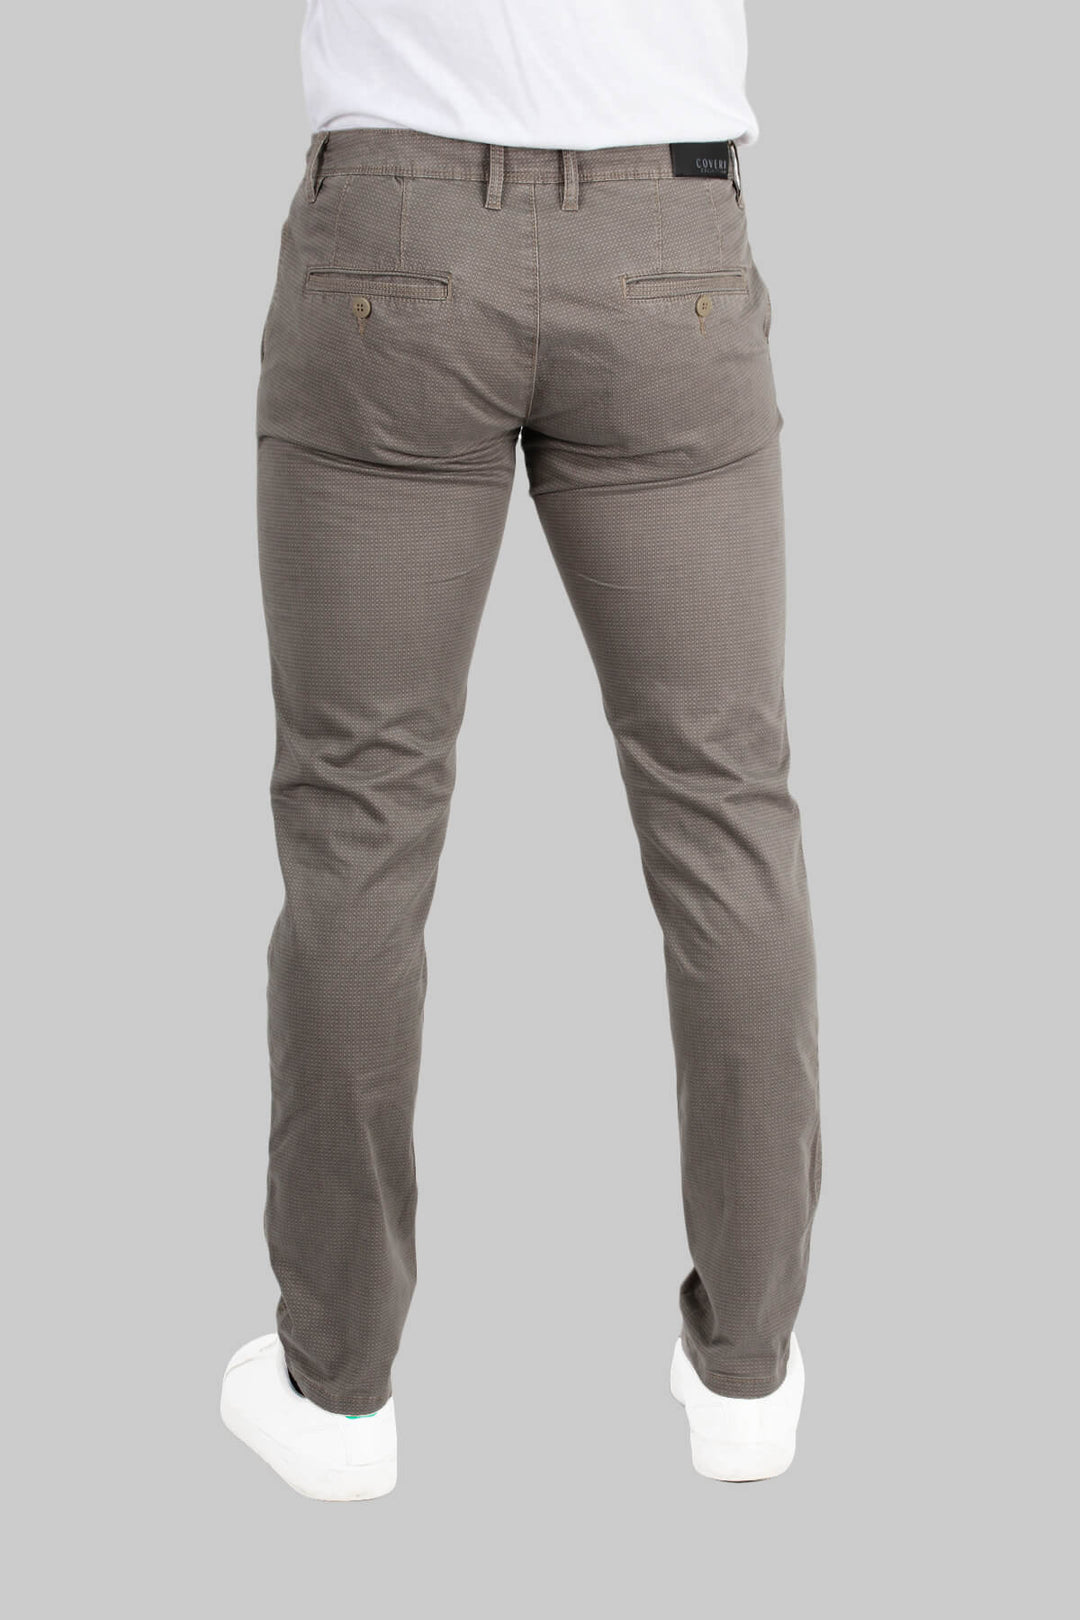 Pantalone Chino Coveri Collection con microfantasia